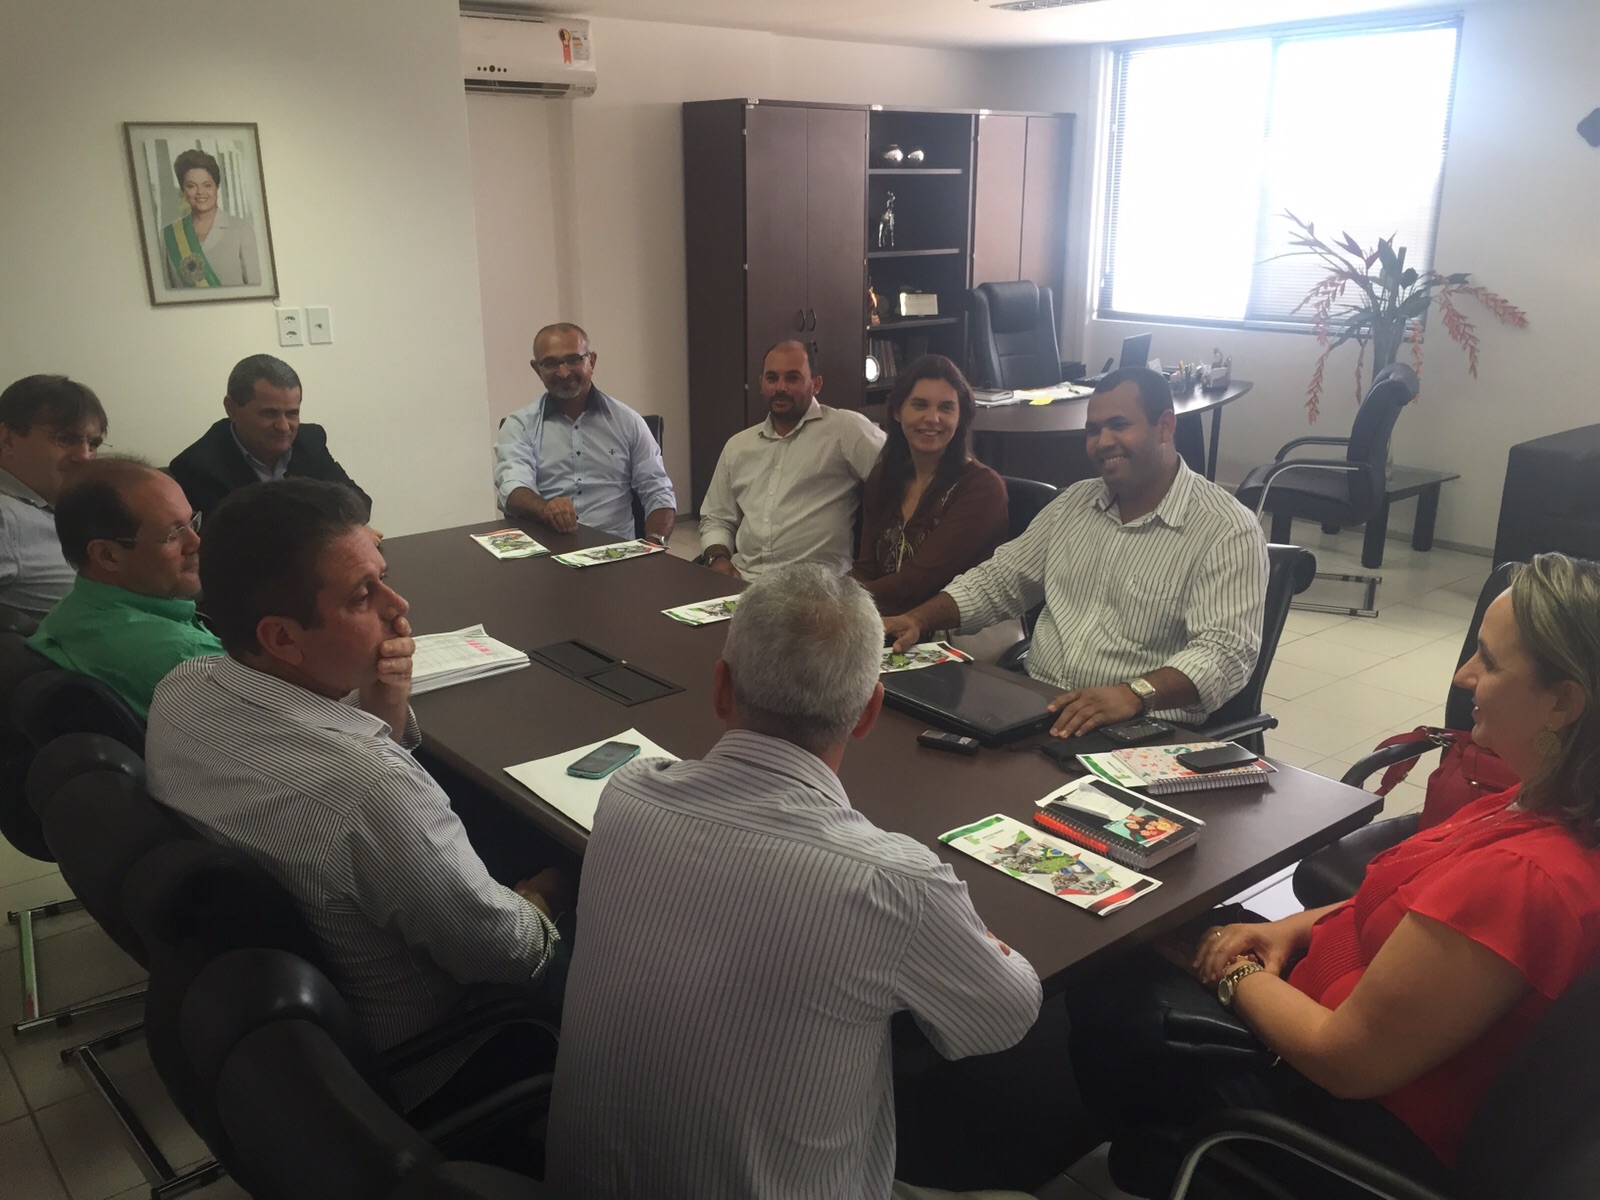 Jó Pereira busca parcerias para o fortalecimento das cooperativas de Alagoas